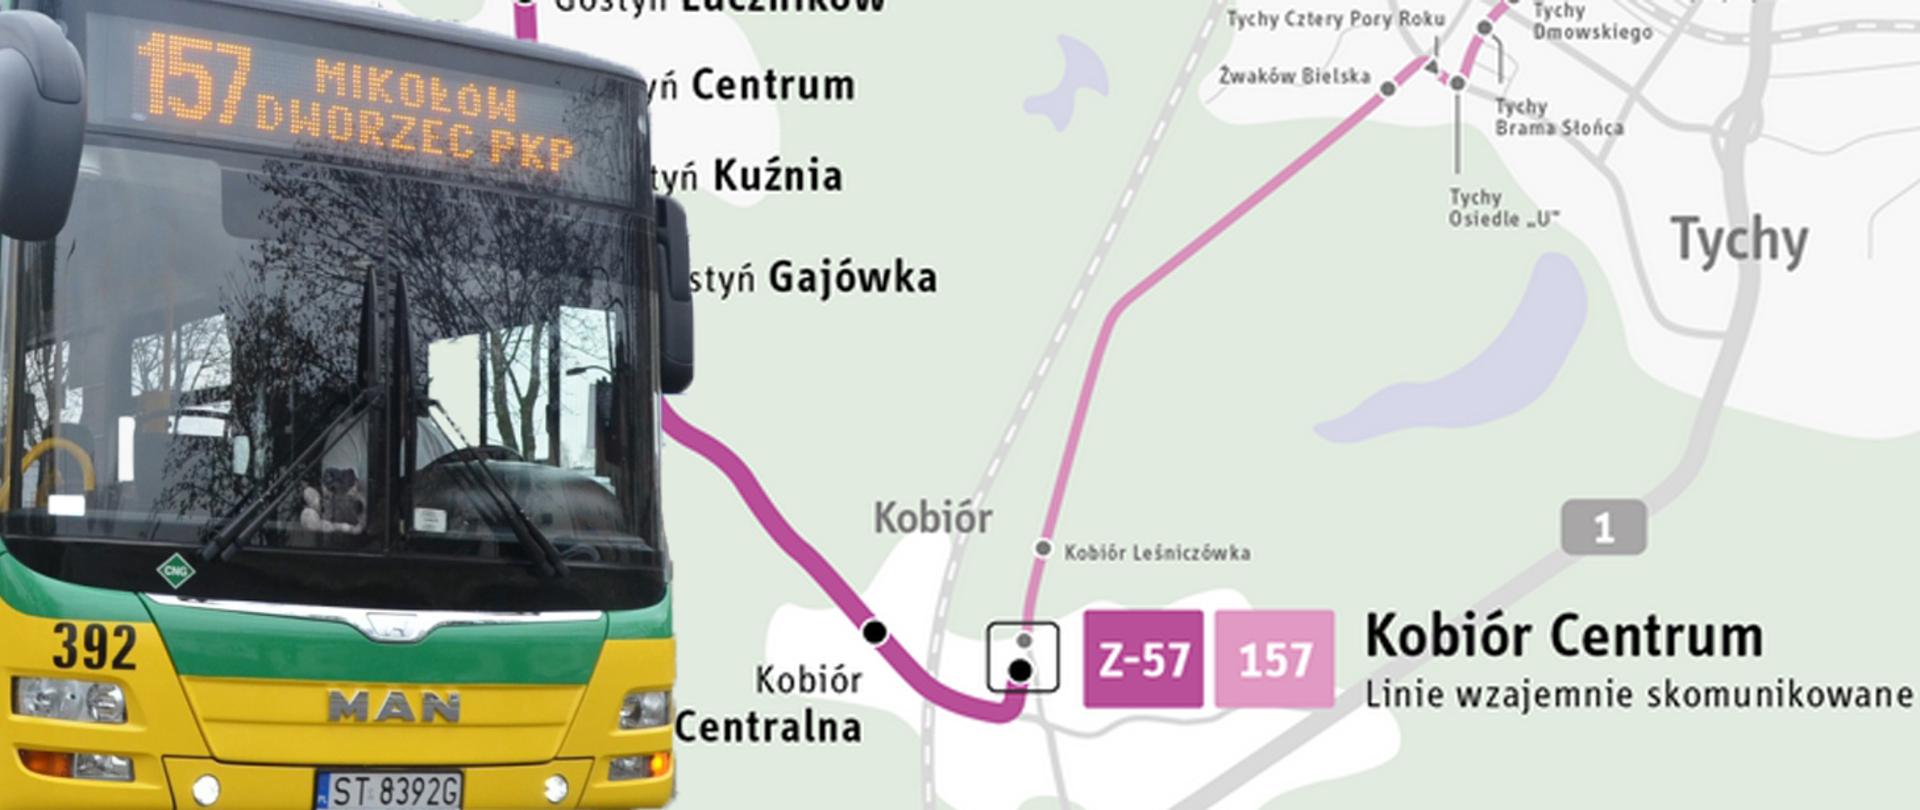 Zielono żółty autobus, w tle mapa z zaznaczoną na fioletowo trasą autobusu